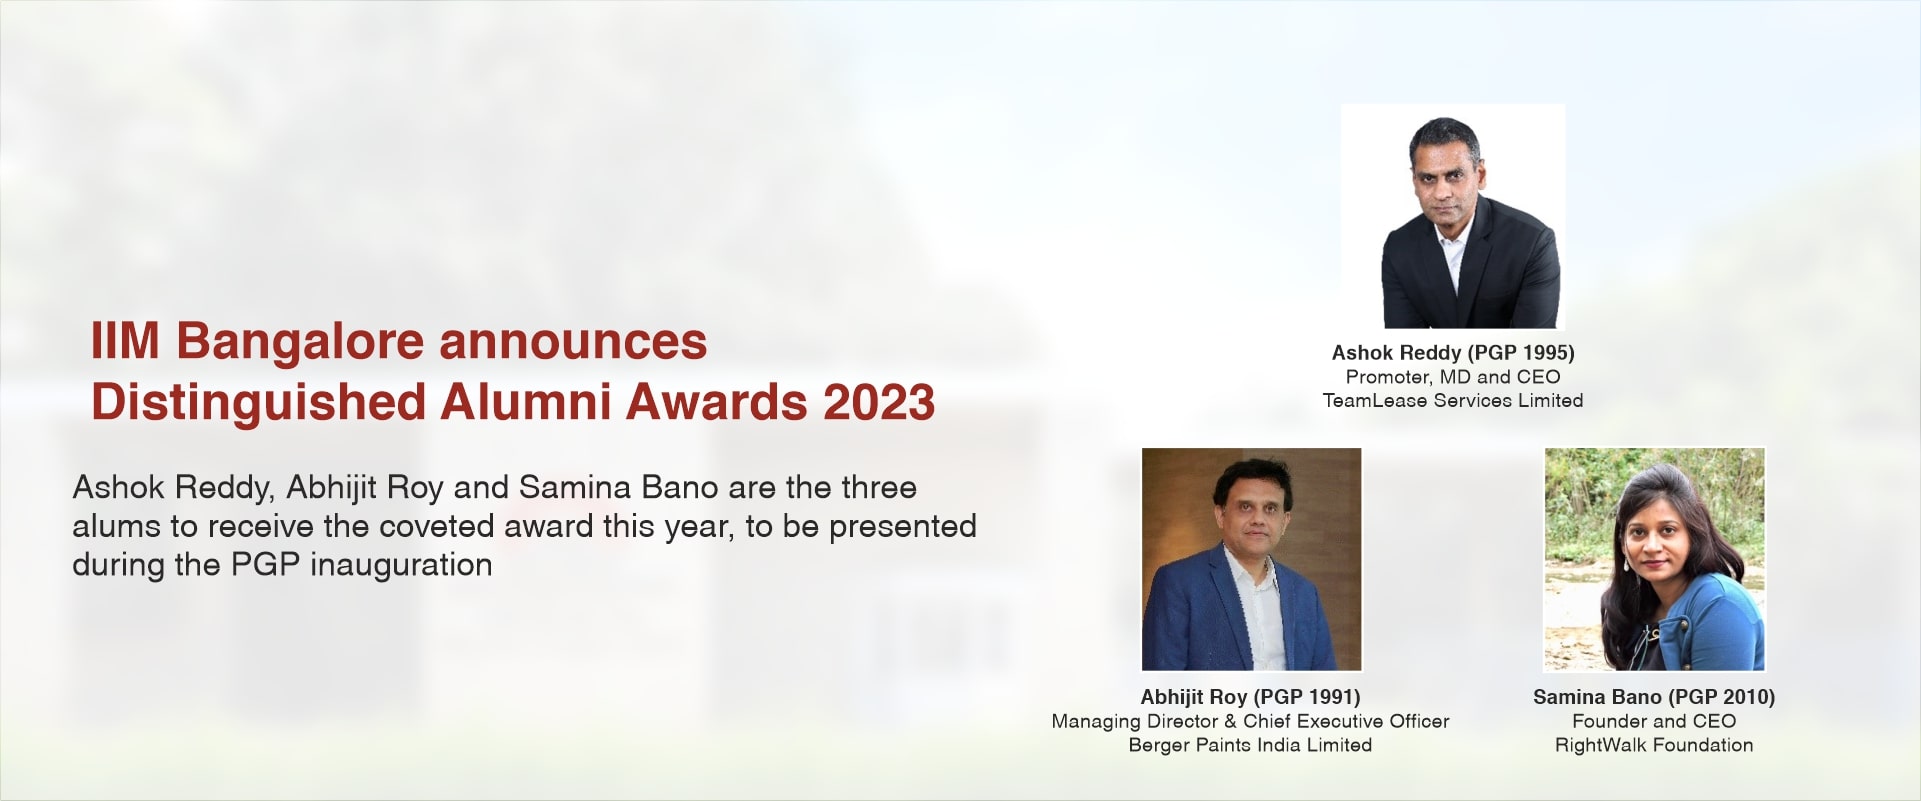 IIM Bangalore announces Distinguished Alumni Awards 2023